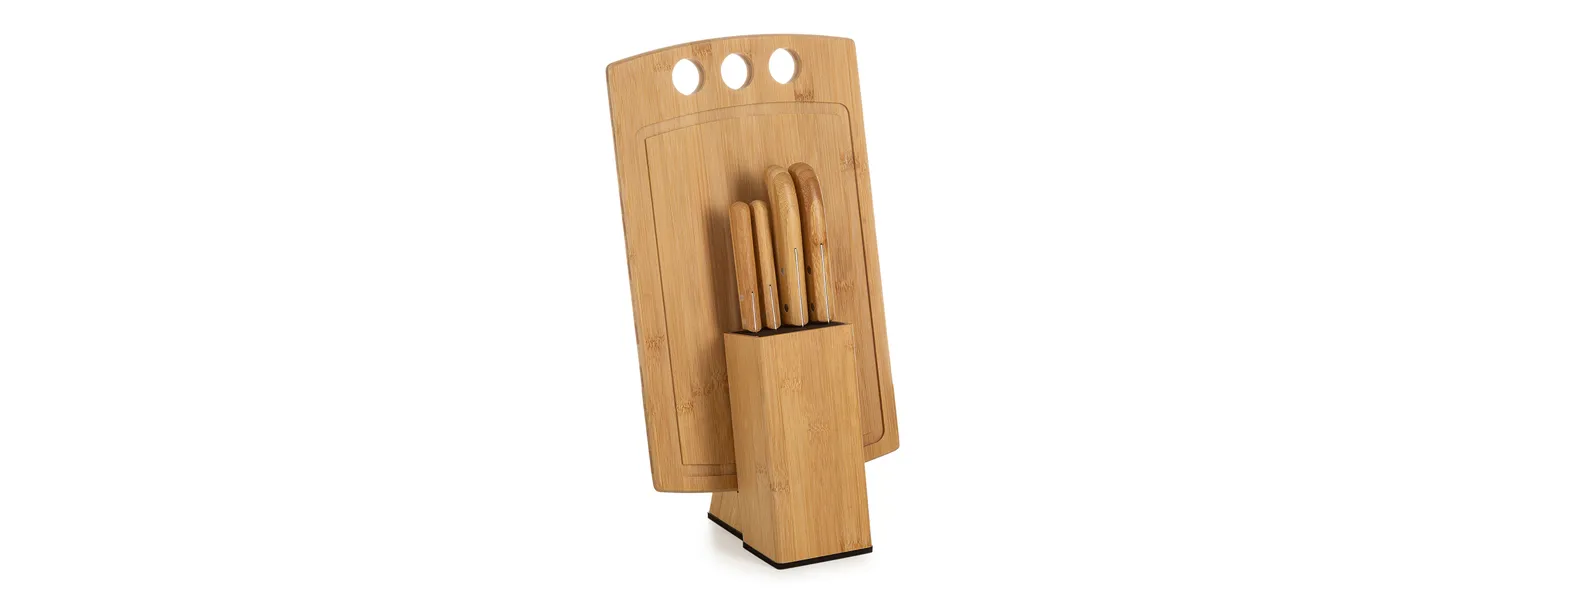 Conjunto para cozinha em bambu/inox; Acompanha tábua com 3 furos e cepo em bambu; Faca 7, faca para pão 7, faca para frutas 4 e faca para legumes 3.